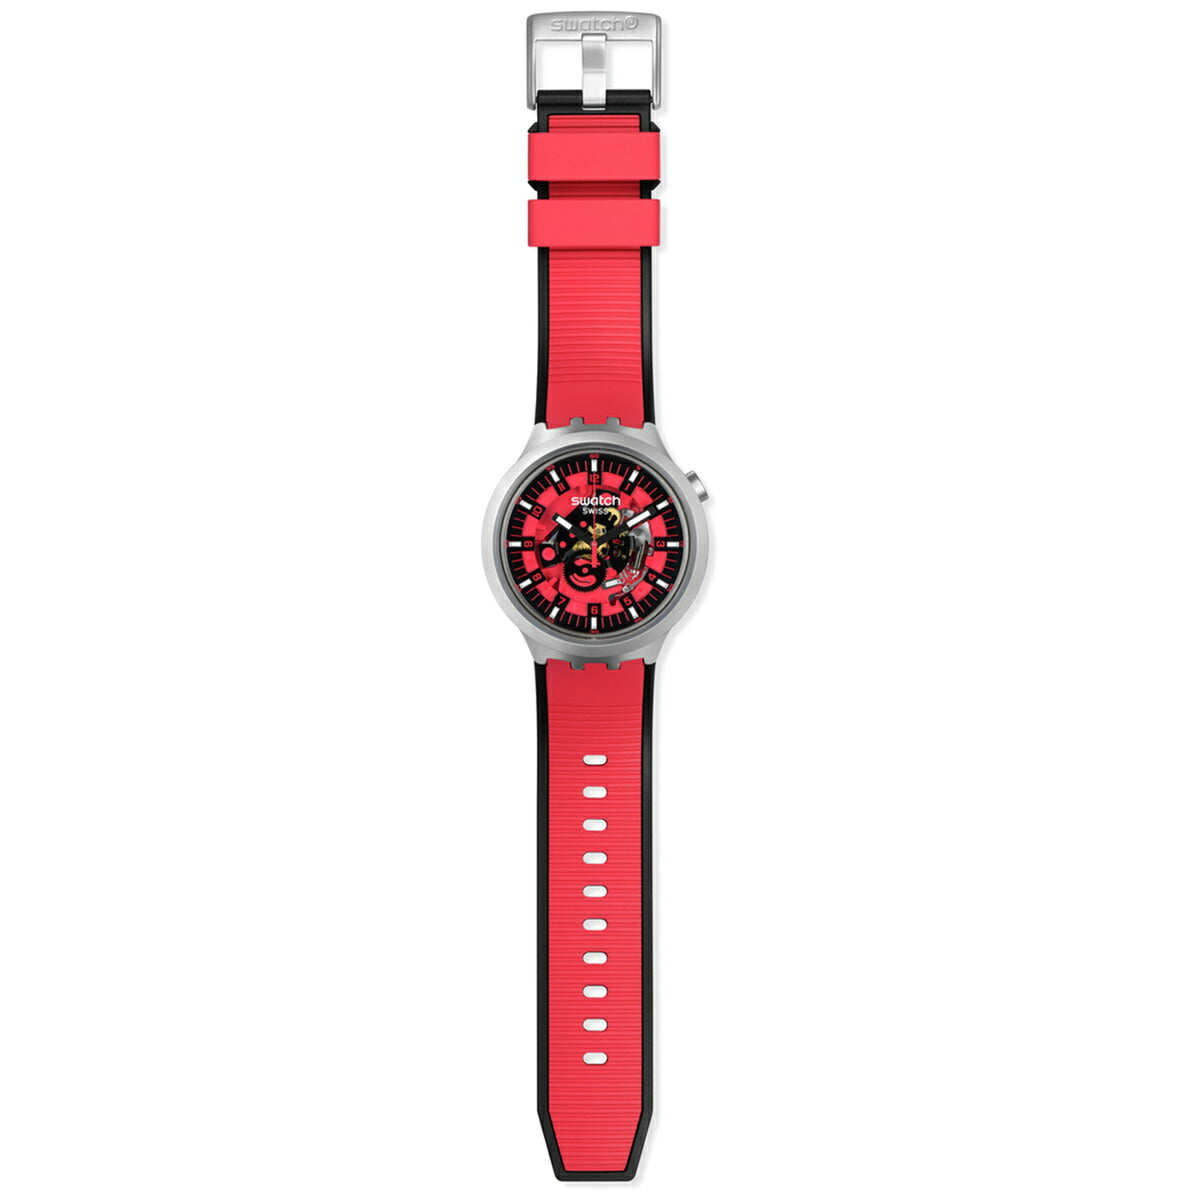 swatch スウォッチ ビッグボールド アイロニー SB07S110 腕時計 メンズ BIG BOLD IRONY RED JUICY